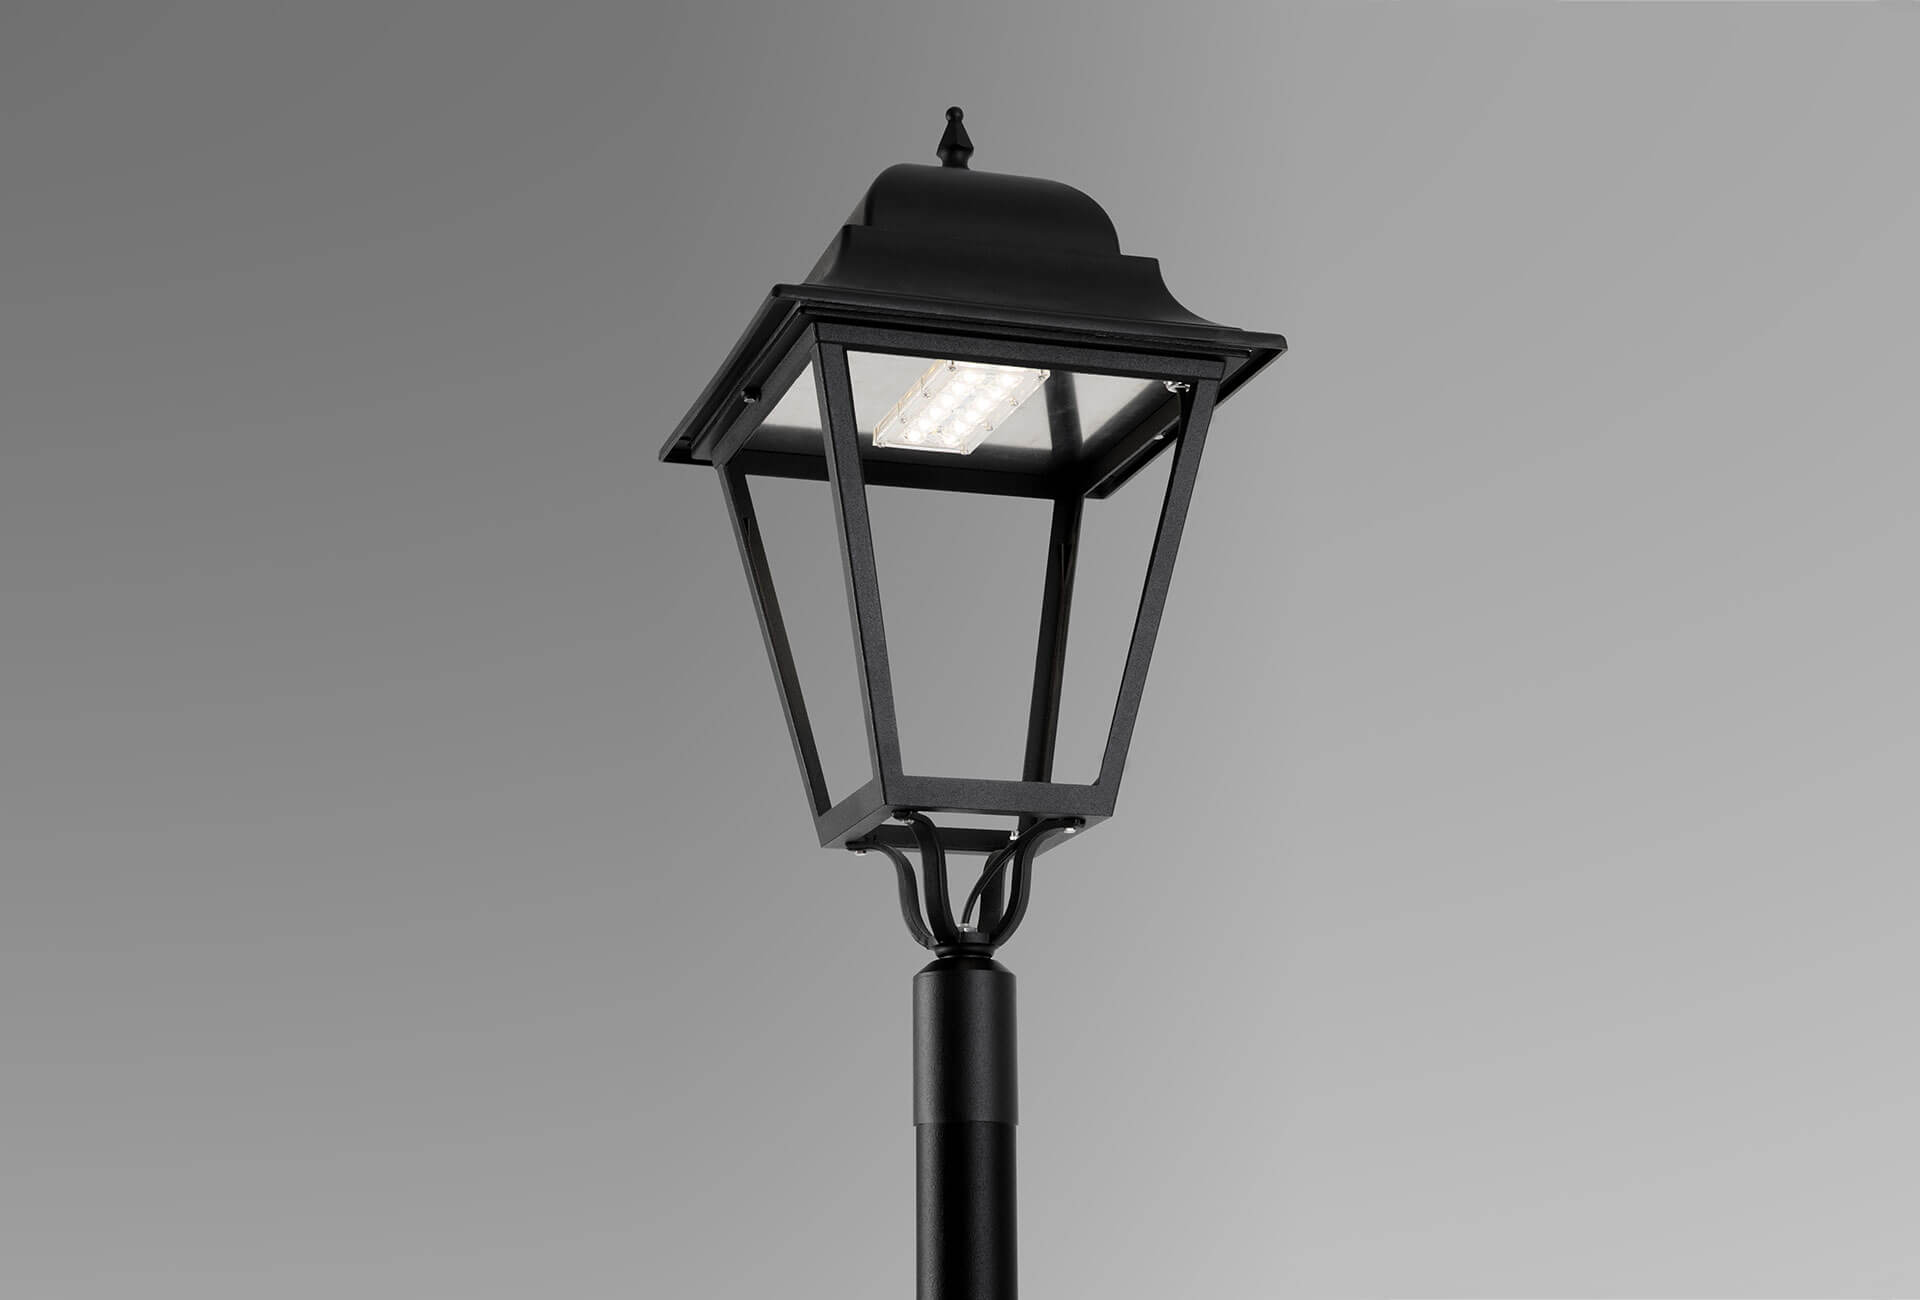 Luxtella | LED street light or LED street lamp for public lighting